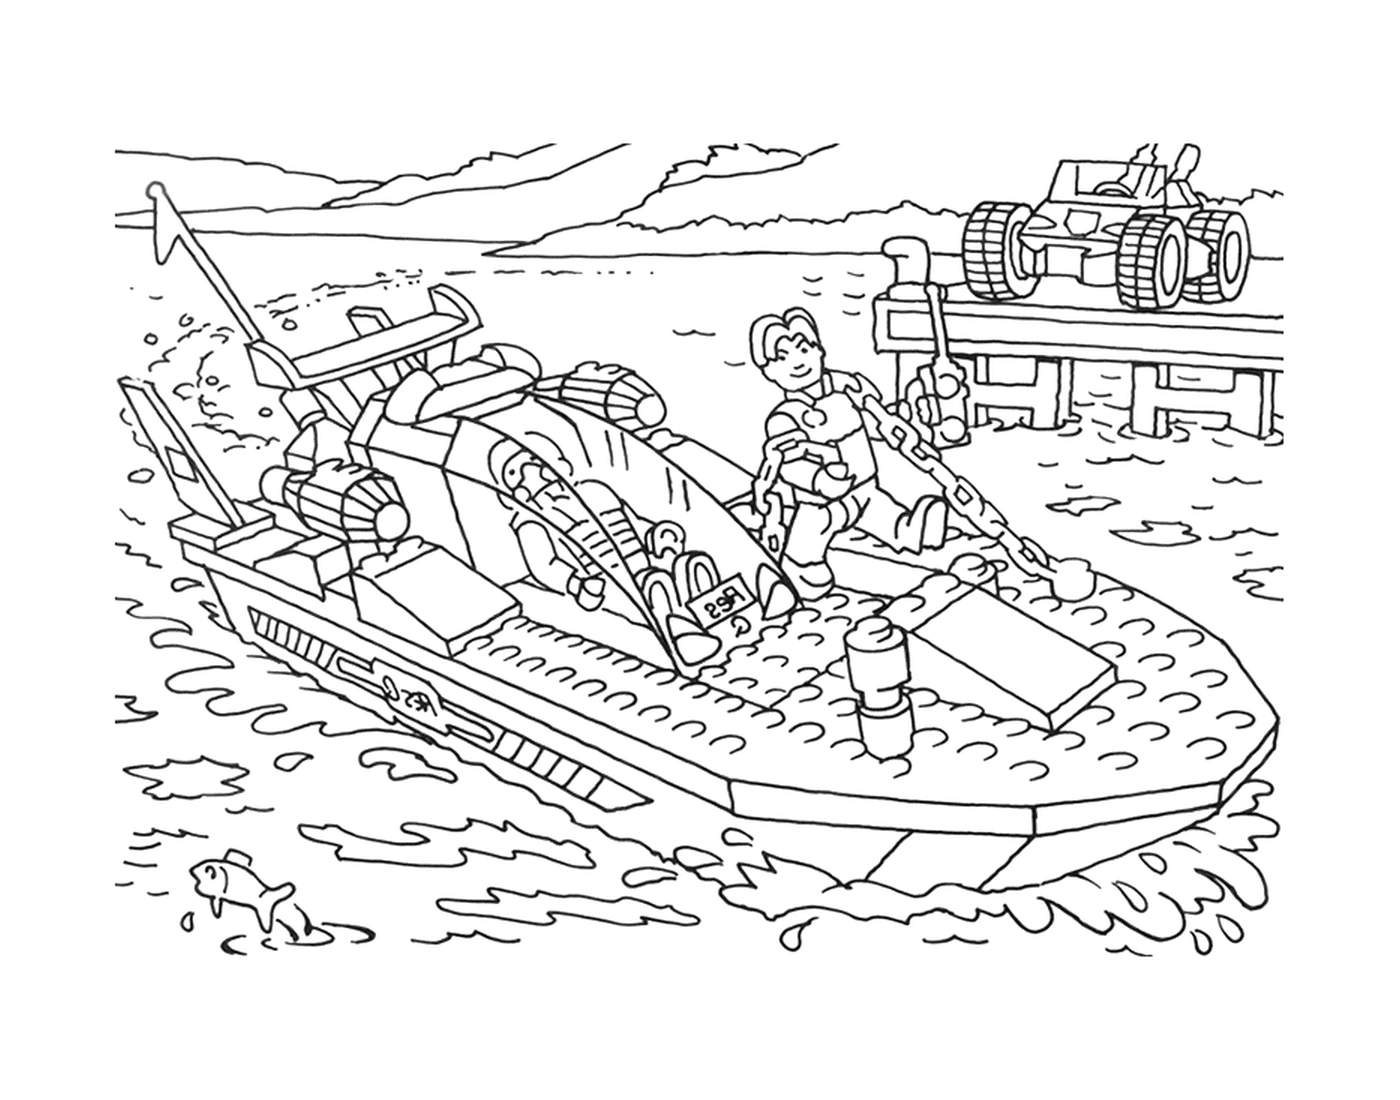  Mann in einem Lego-Boot 